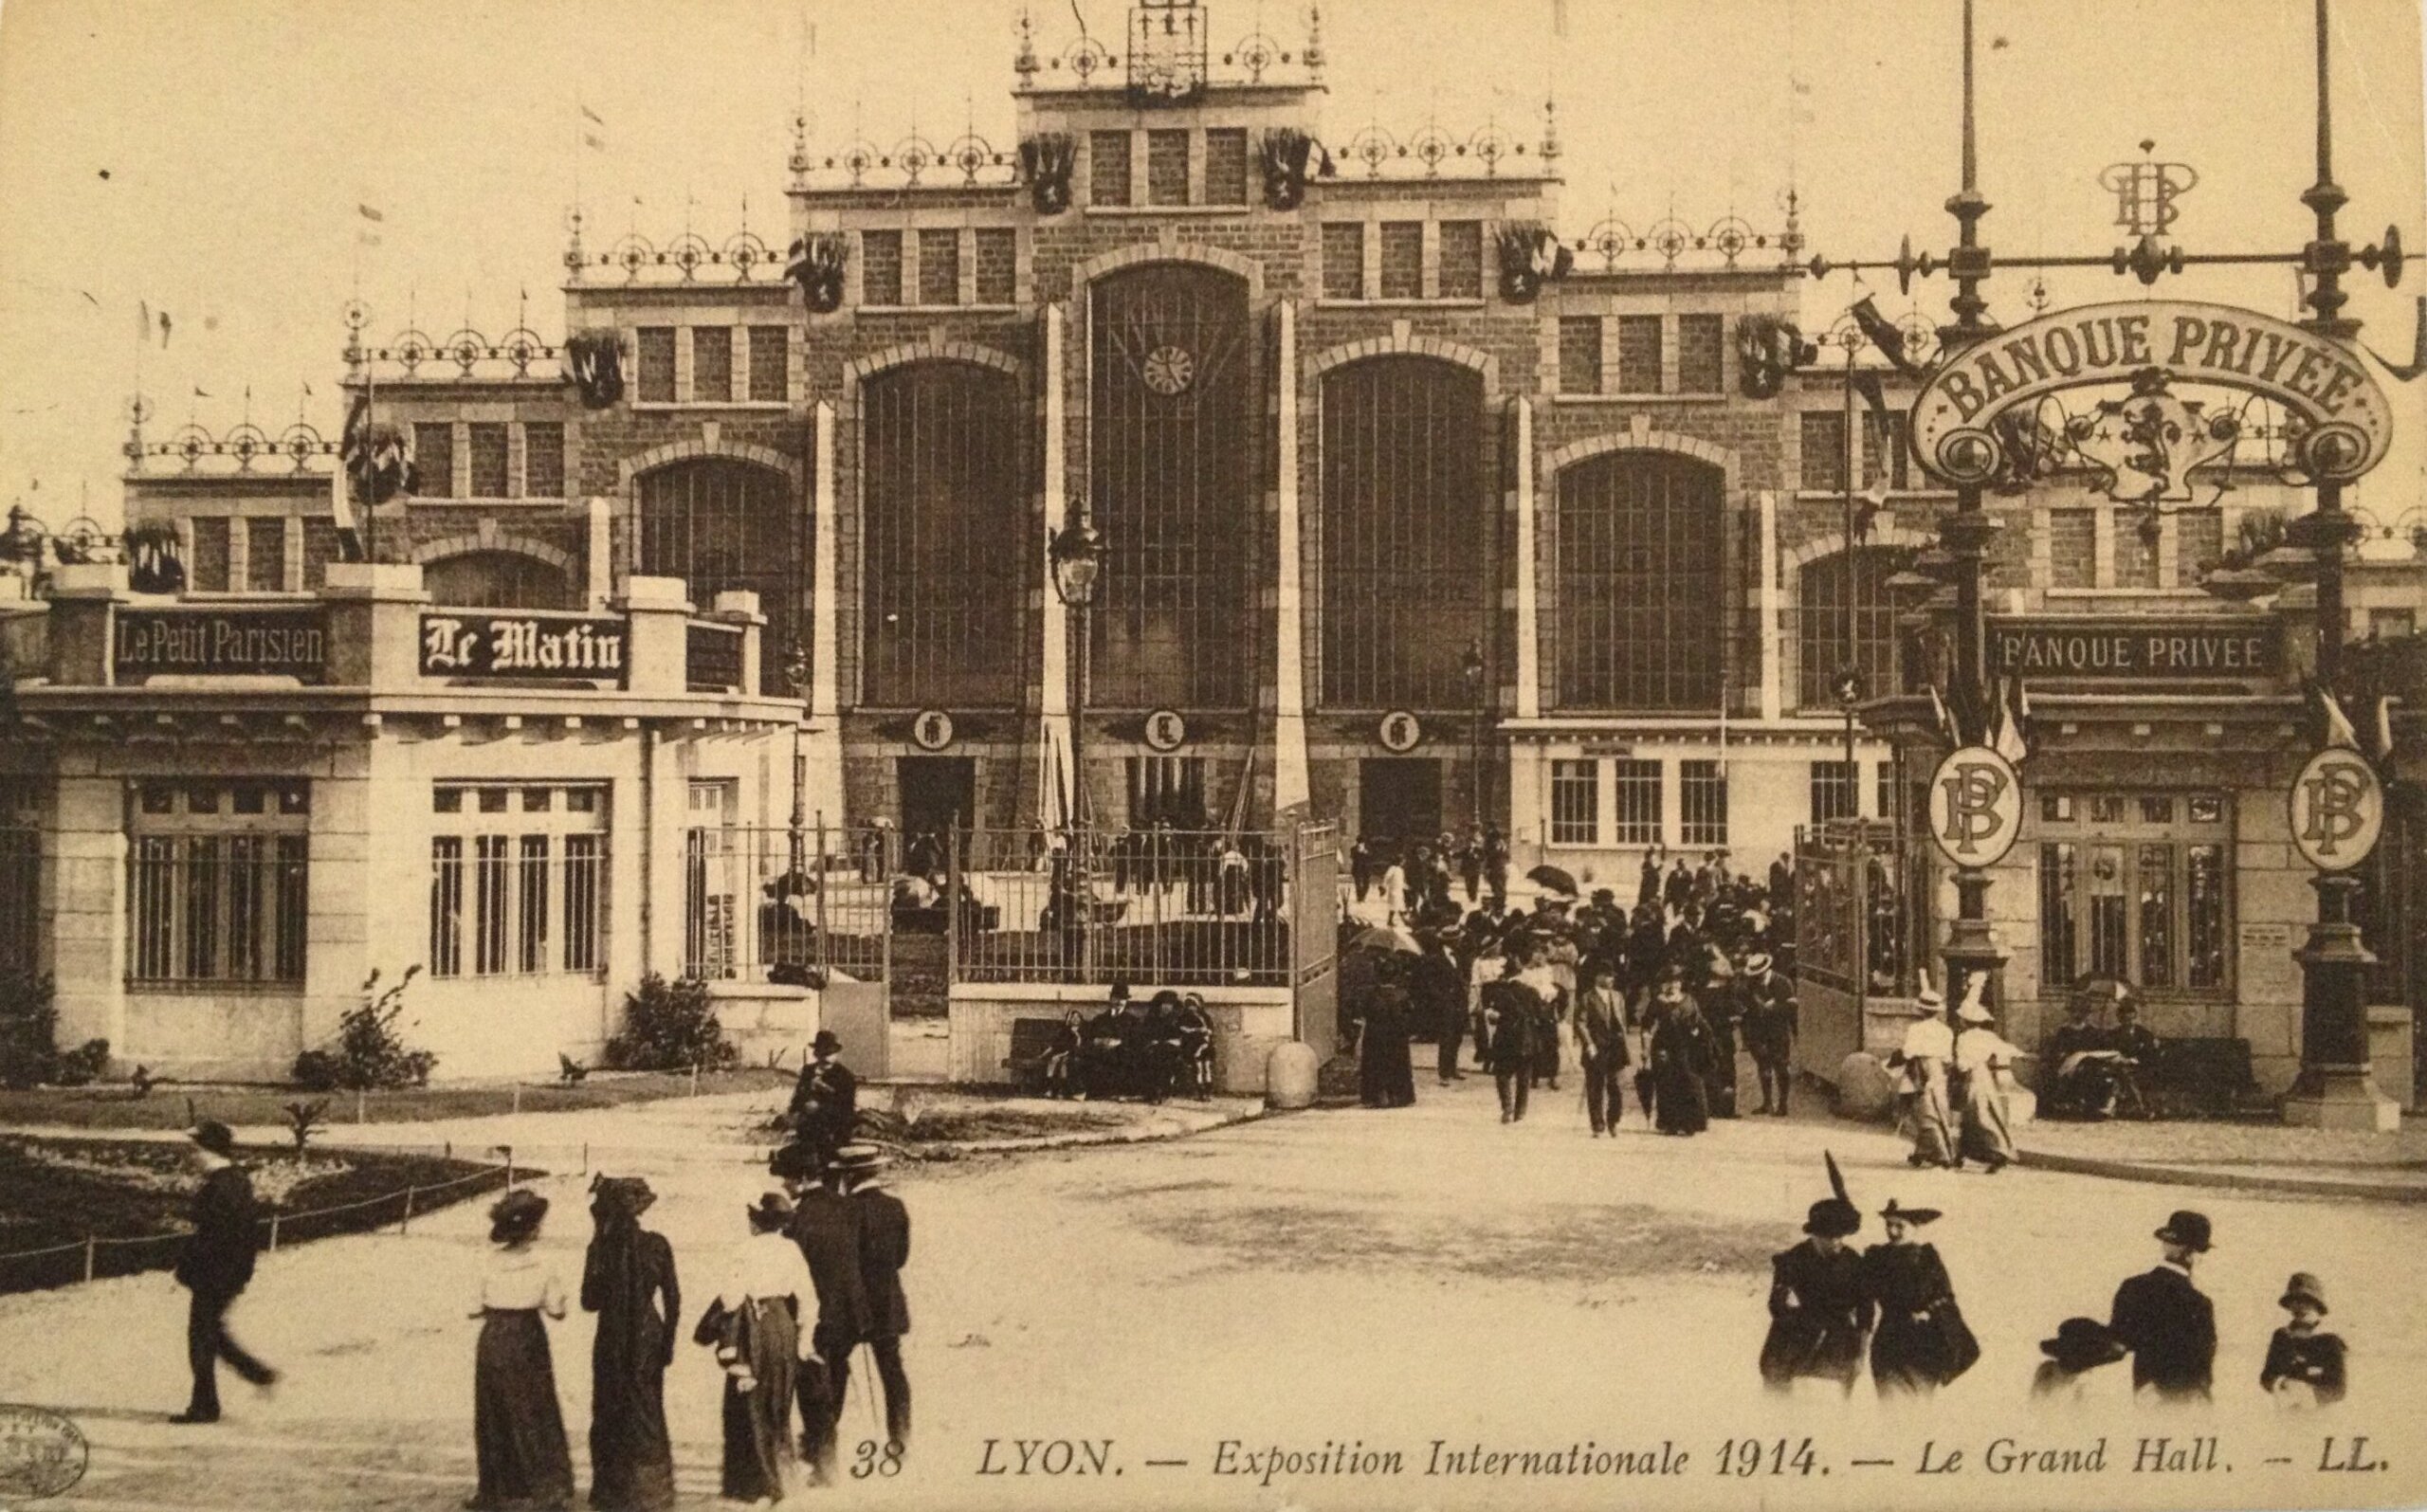 La Halle Tony Garnier (Lyon 7e) pendant l'exposition universelle de 1914. Photo d'archive.